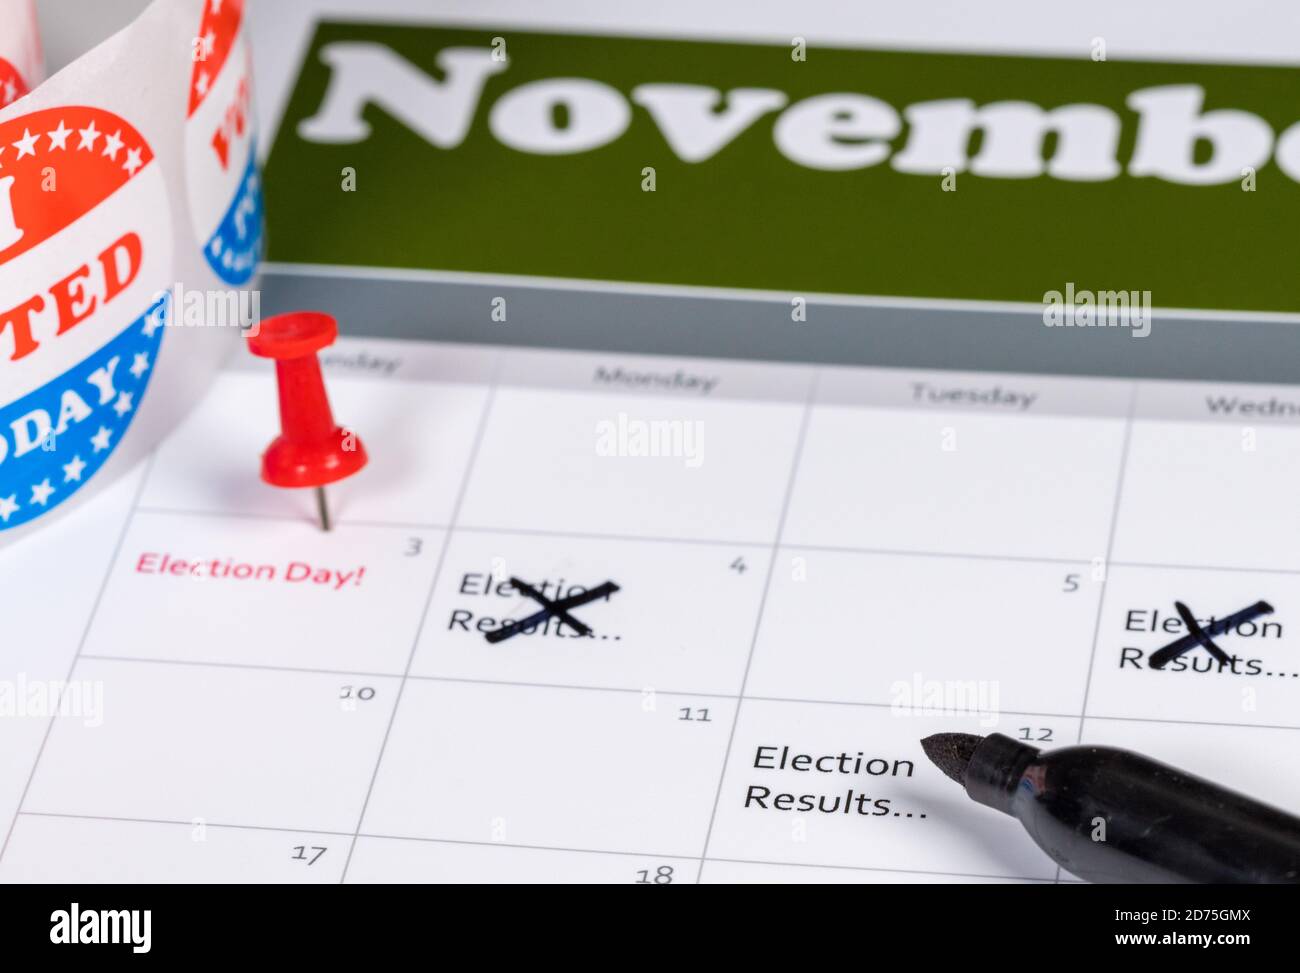 Calendrier de novembre indiquant le jour de l'élection et divers rappels supprimés pour les résultats, les cotisations aux retards dans le décompte des votes des absents Banque D'Images